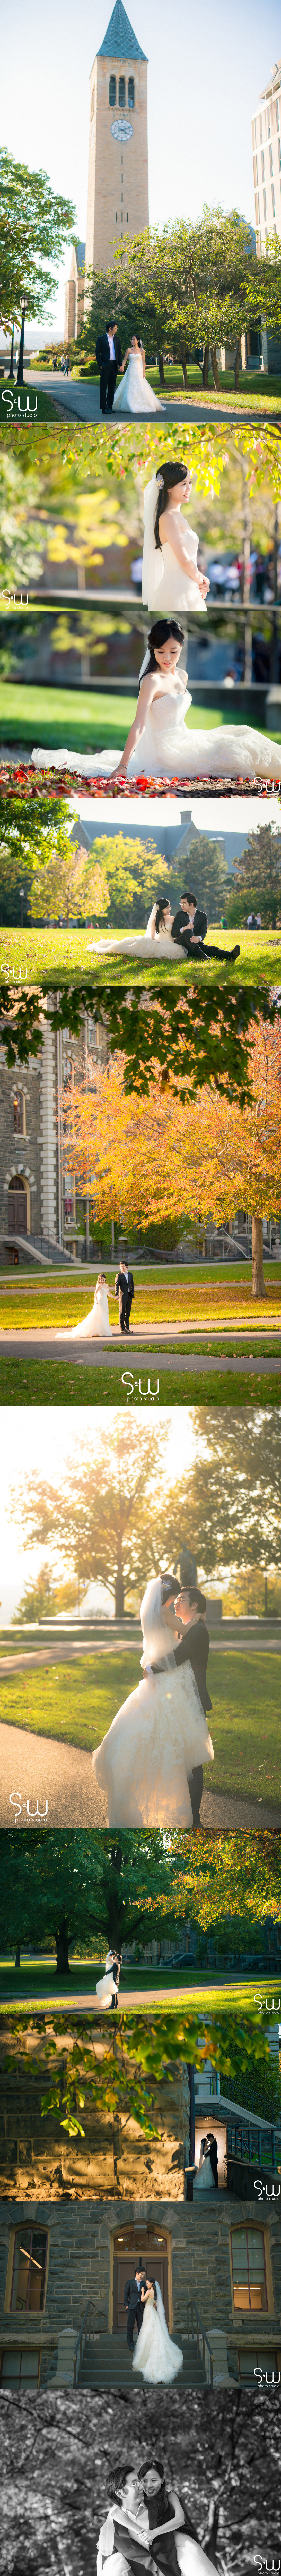 婚紗攝影,紐約康奈爾大學,海外婚紗